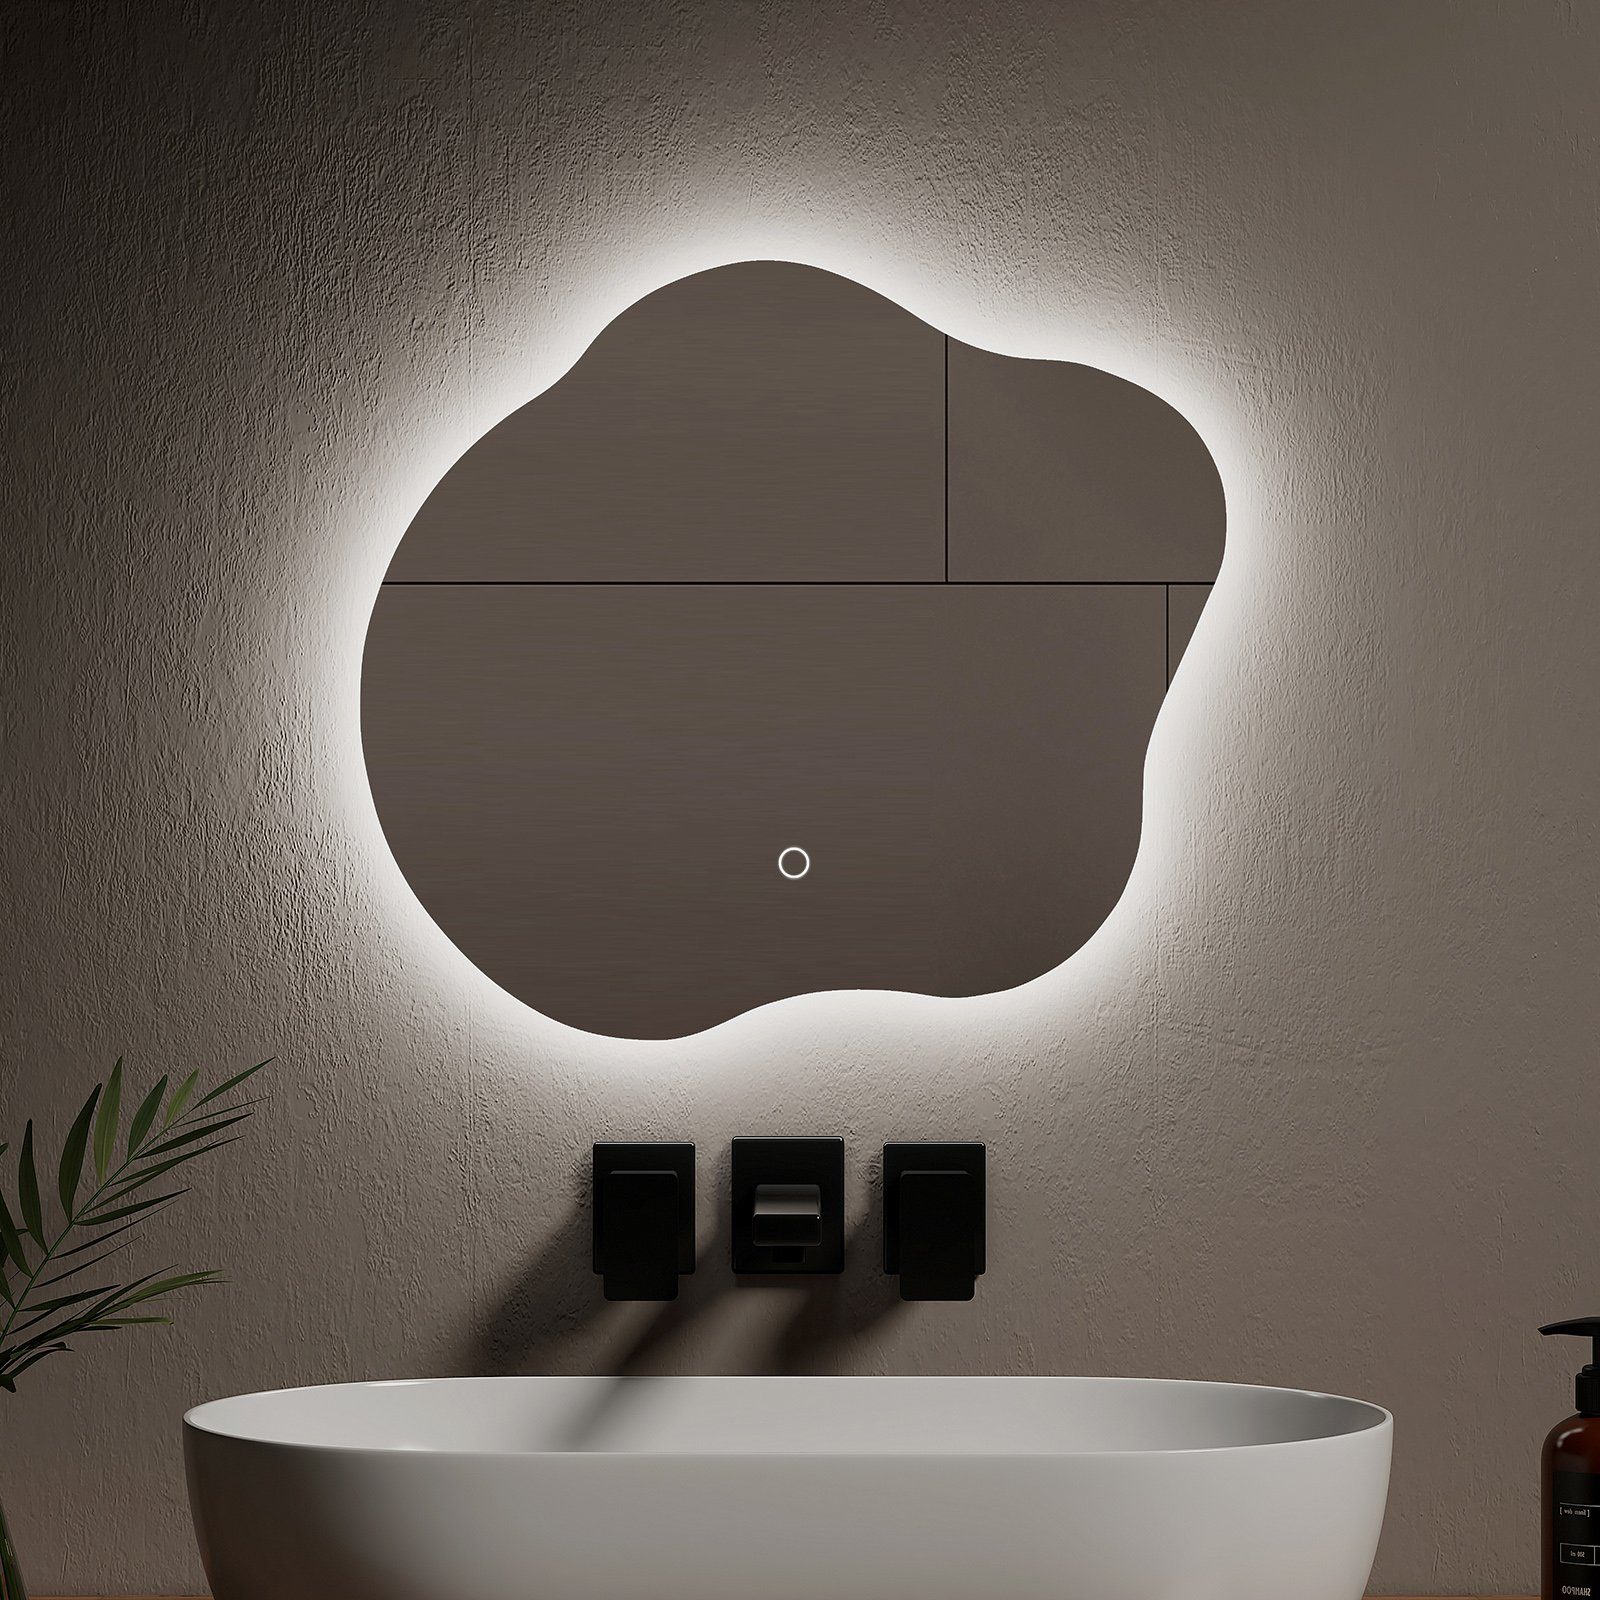 EMKE Badspiegel mit Rahmenloser Unregelmäßiger Farben Lichts, Beleuchtung Wandspiegel, Antibeschlag,Vertikal/Horizontal 3 des Spiegel Installation